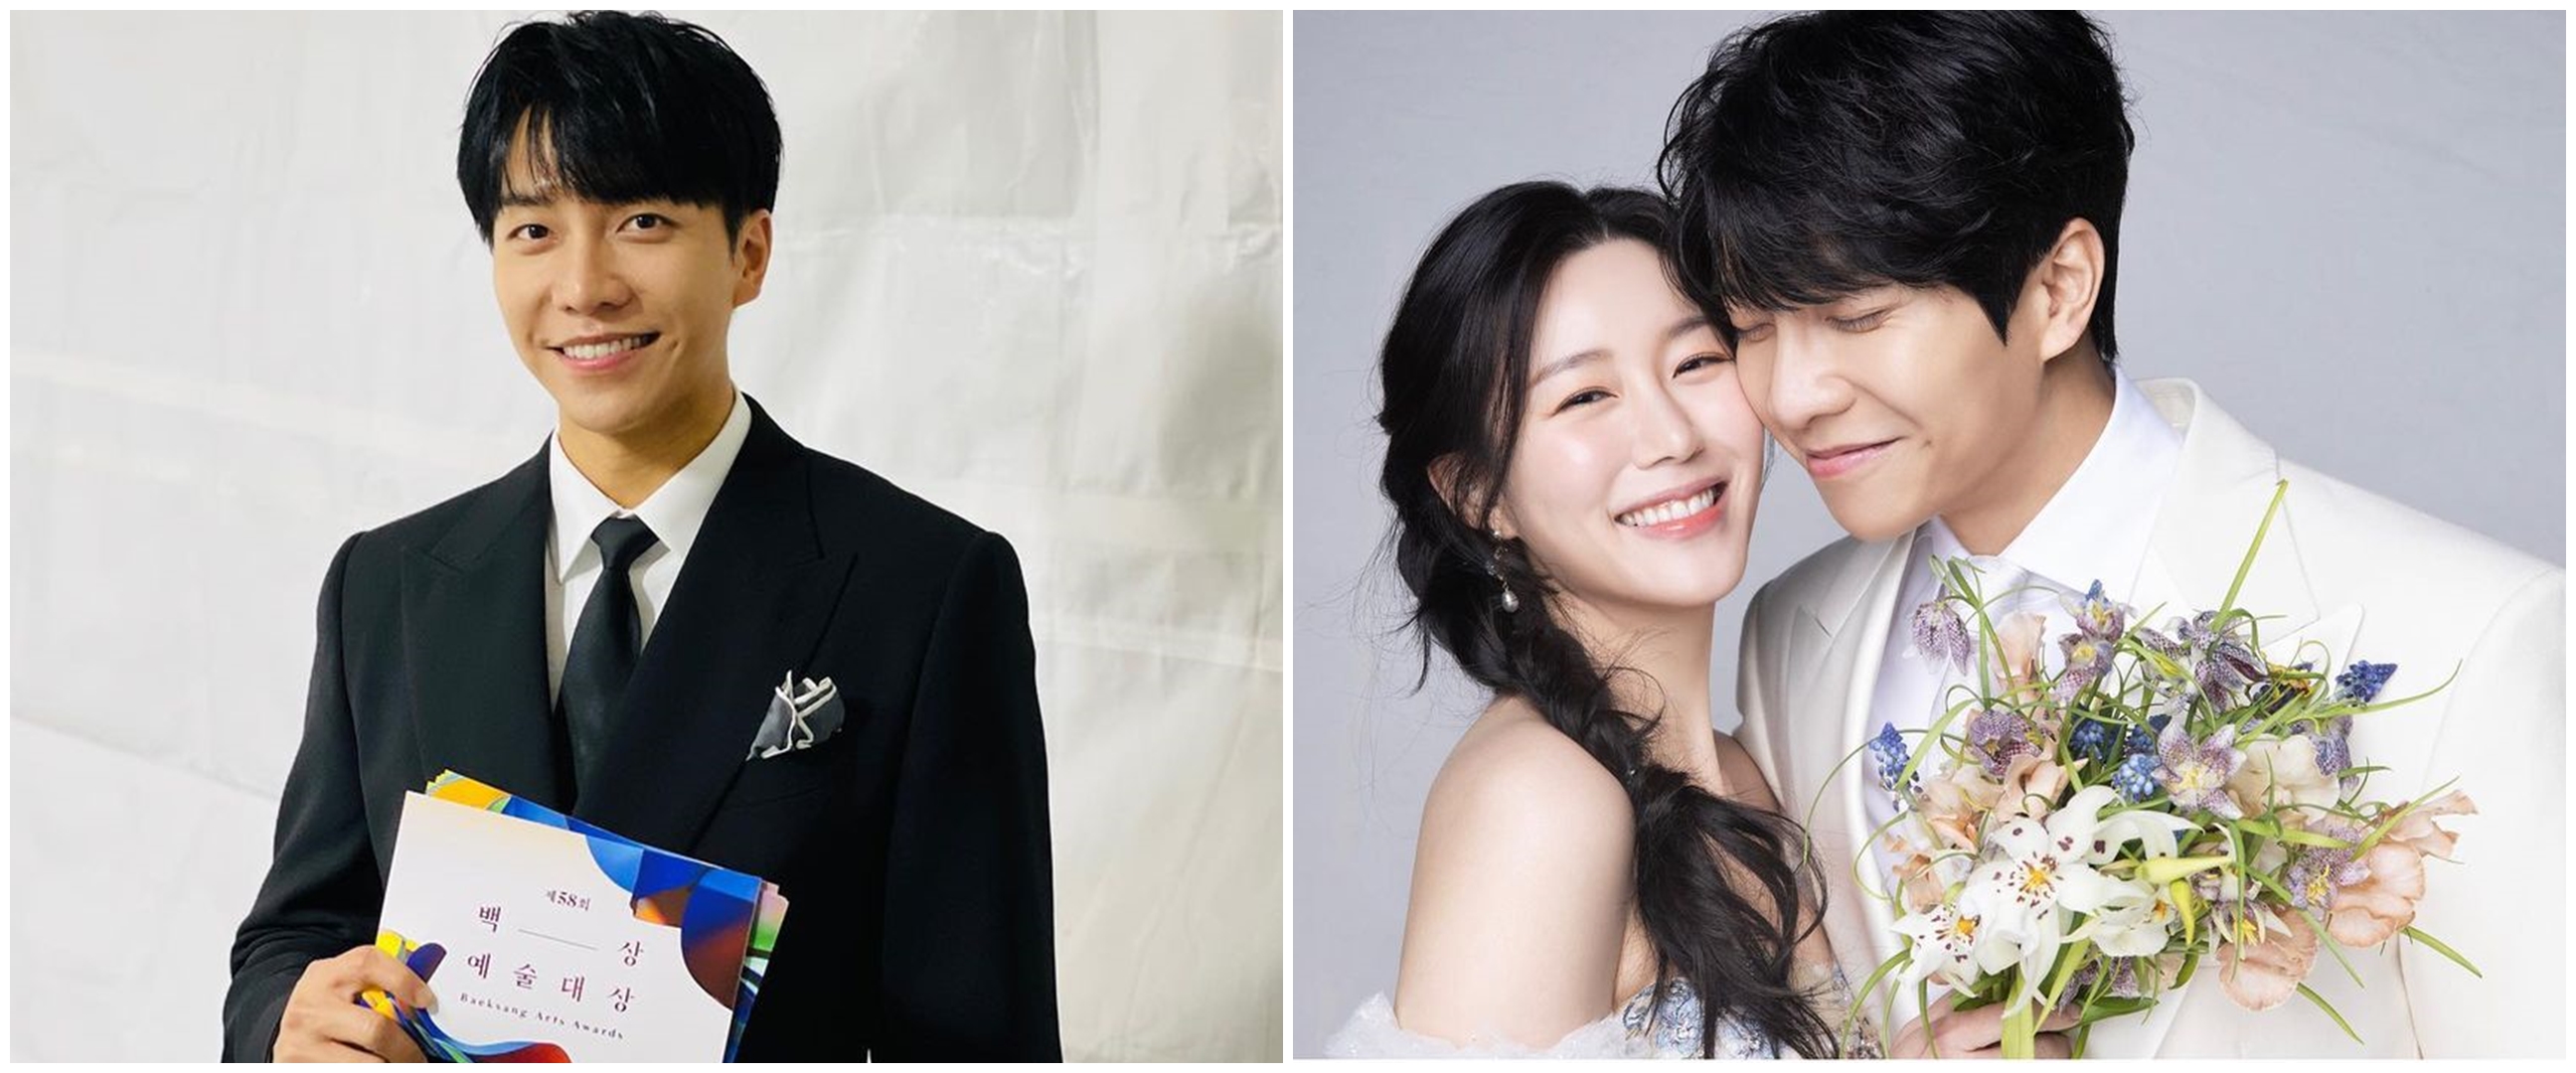 10 Momen pernikahan Lee Seung-gi dan Lee Da-in, sang aktor nyanyi sambil berlutut untuk istri